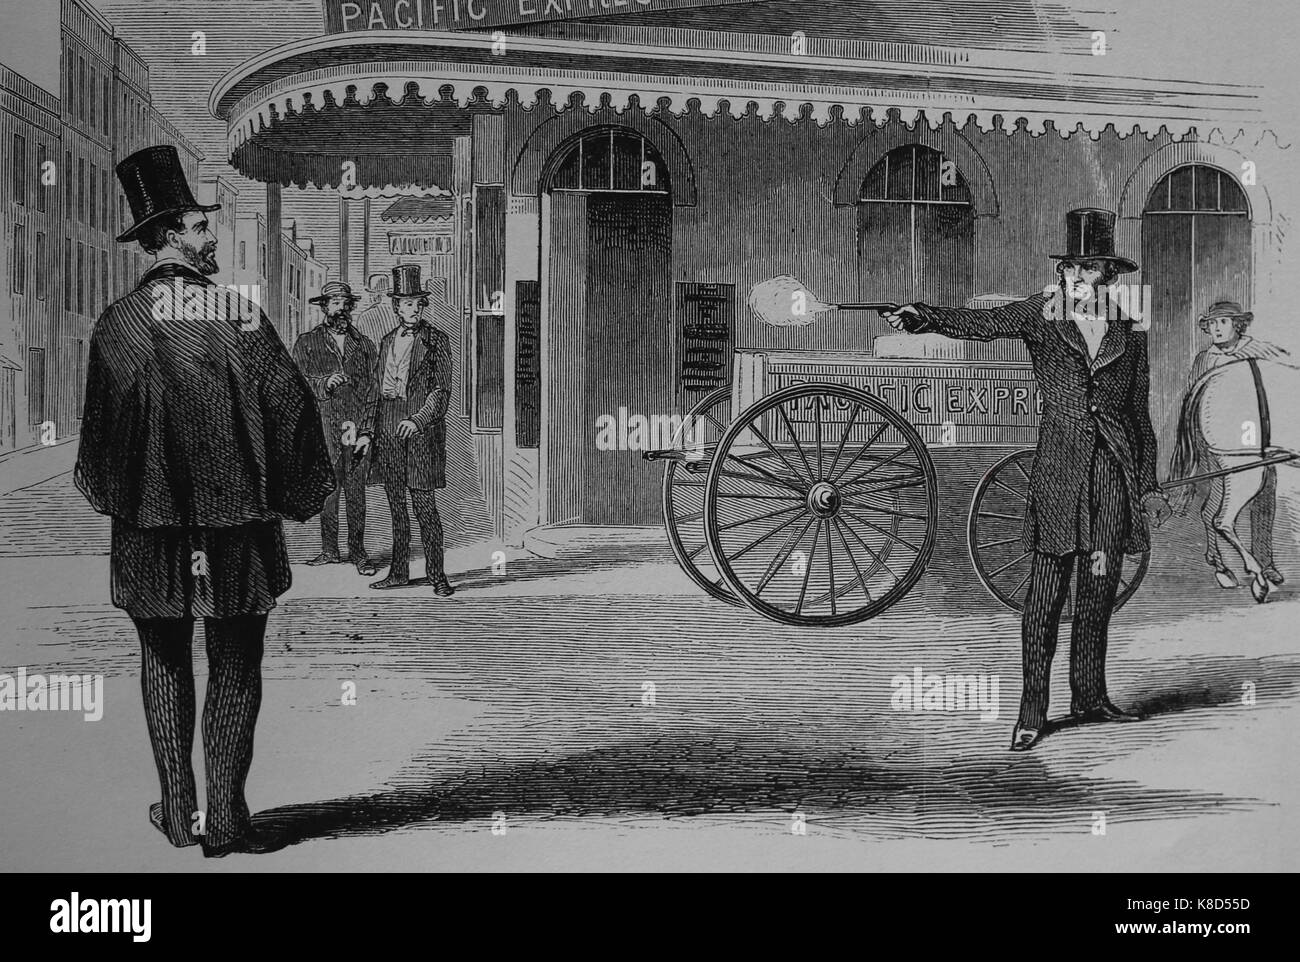 Ermordung von James King von James S. Casey. San Francisco, 14. Mai 1856. Frank Lieslie "s Illustrierte Zeitung, 1856. Stockfoto